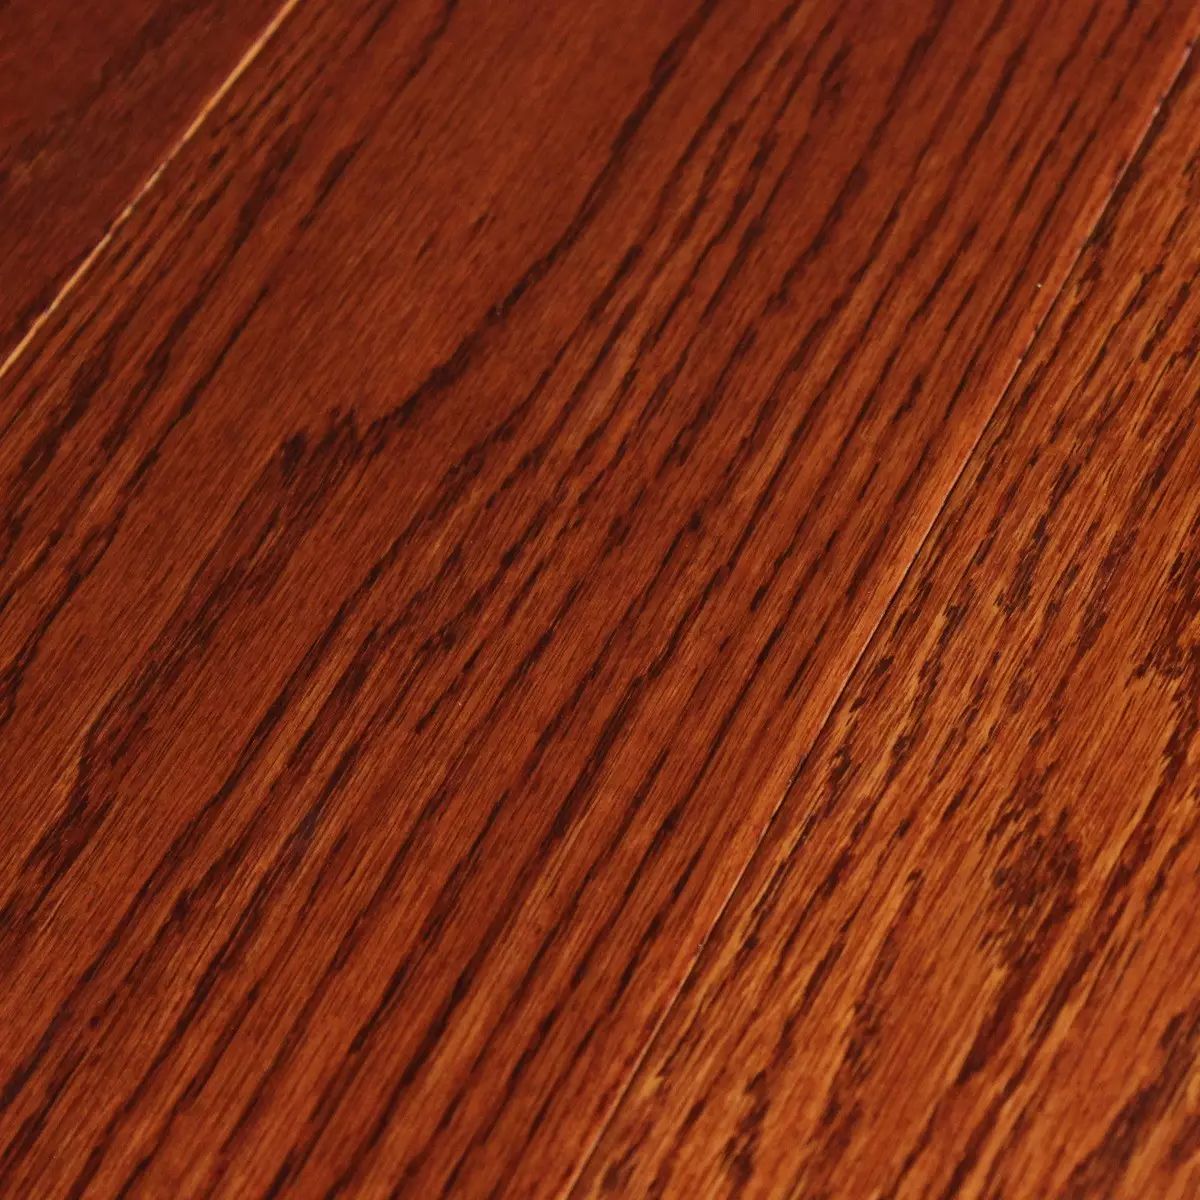 书香世佳地板-实木地板-美国红橡 金黄色 - 书香世佳地板 - 九正建材网